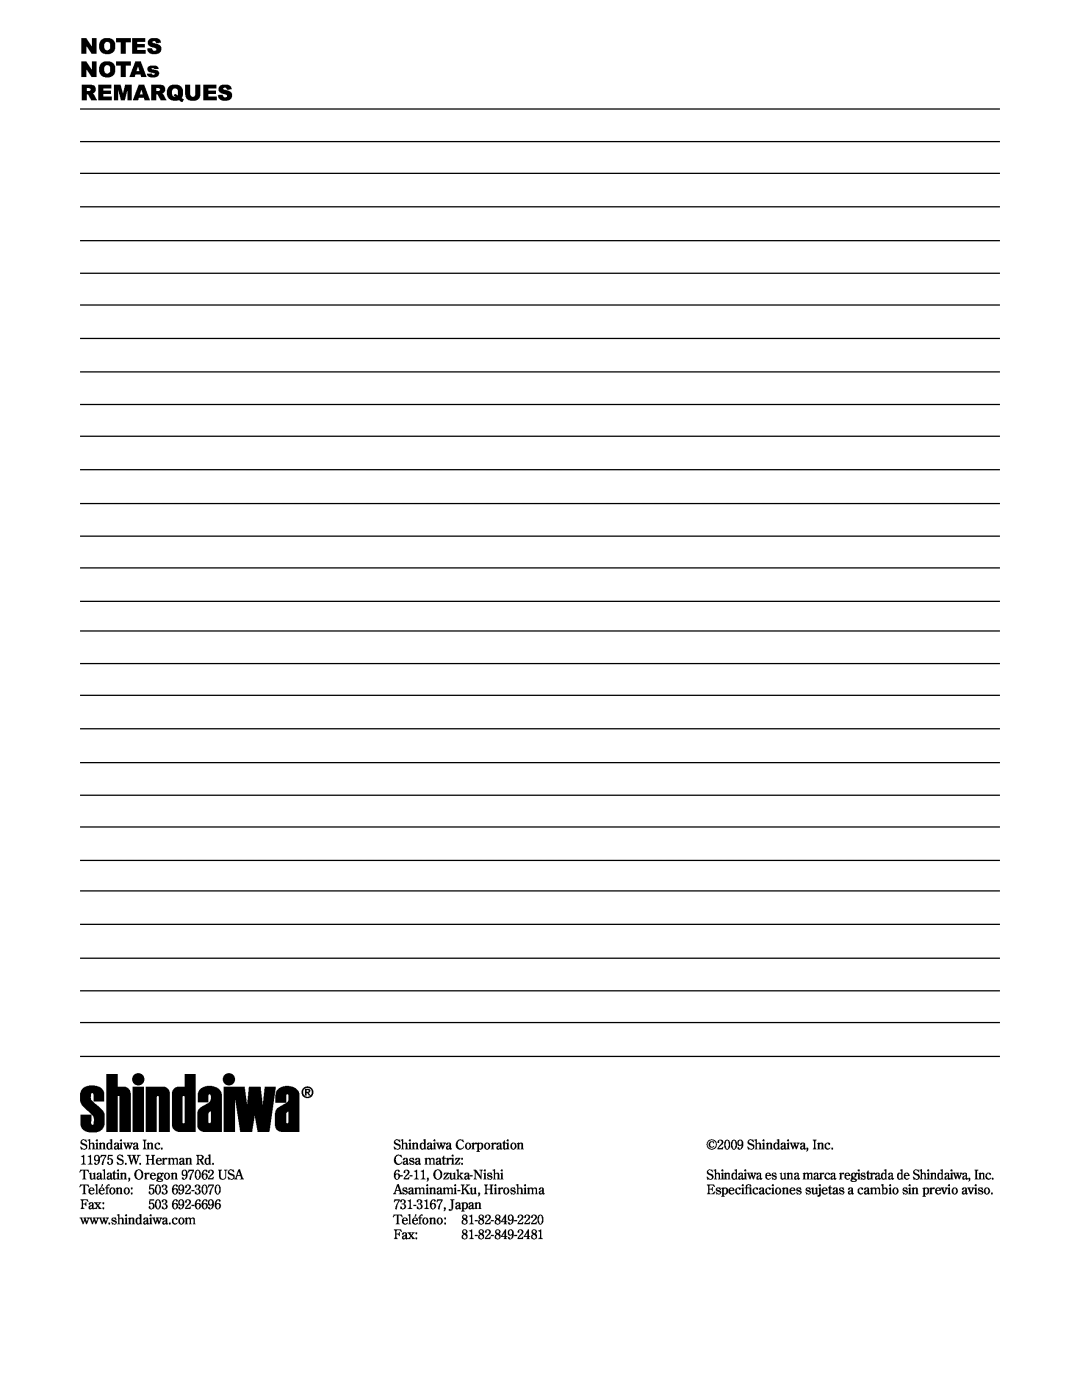 Shindaiwa 89304, C3410/EVC manual NOTES NOTAs REMARQUES, Shindaiwa Inc 